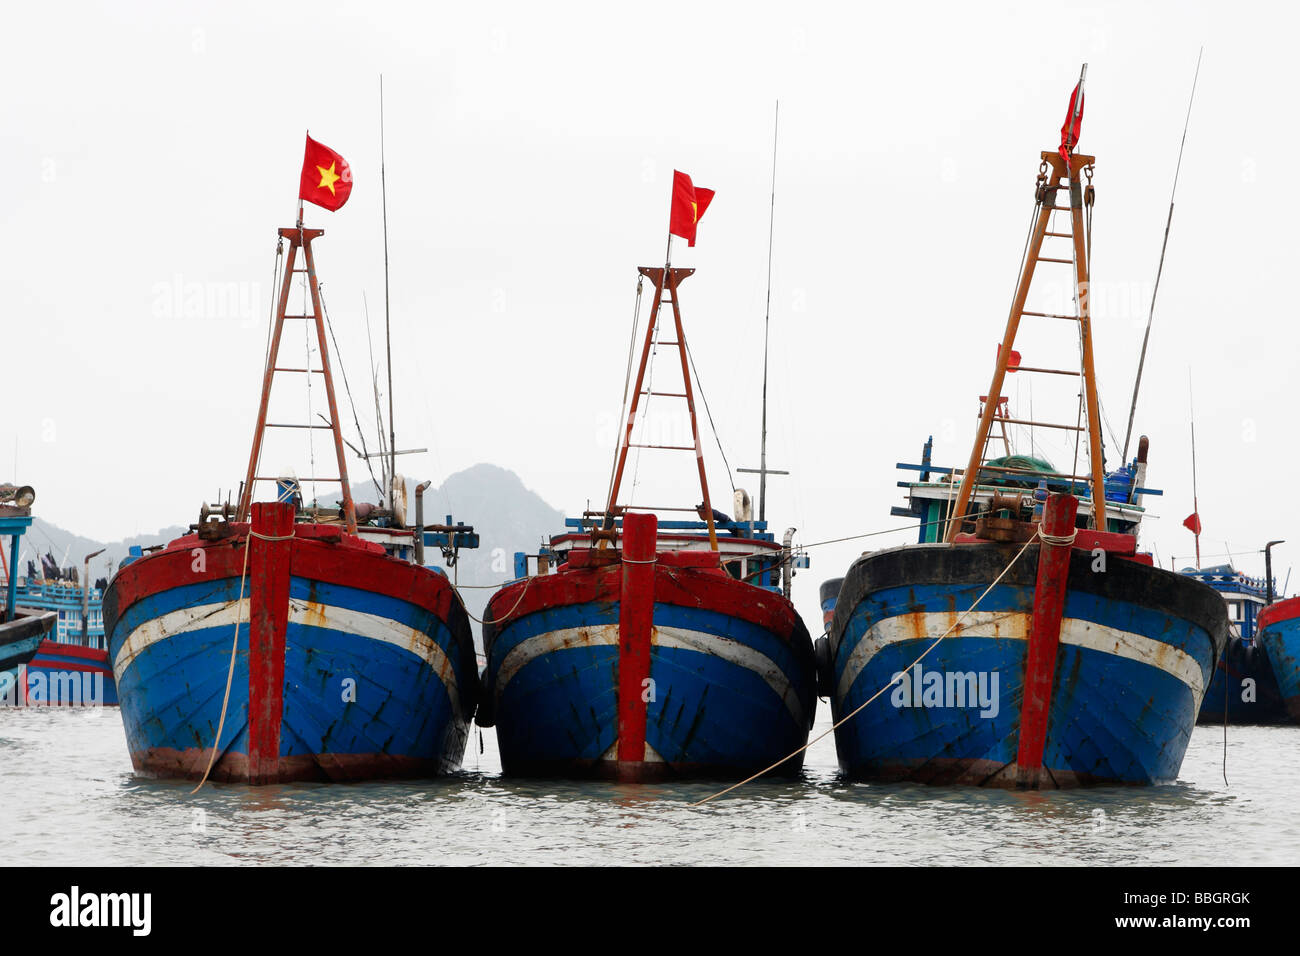 Tradicional vietnamita [barcos] con arcos pintados de rojo y azul, amarrado  y enarbolan la bandera nacional, [el] La Bahía de Halong, Vietnam  Fotografía de stock - Alamy